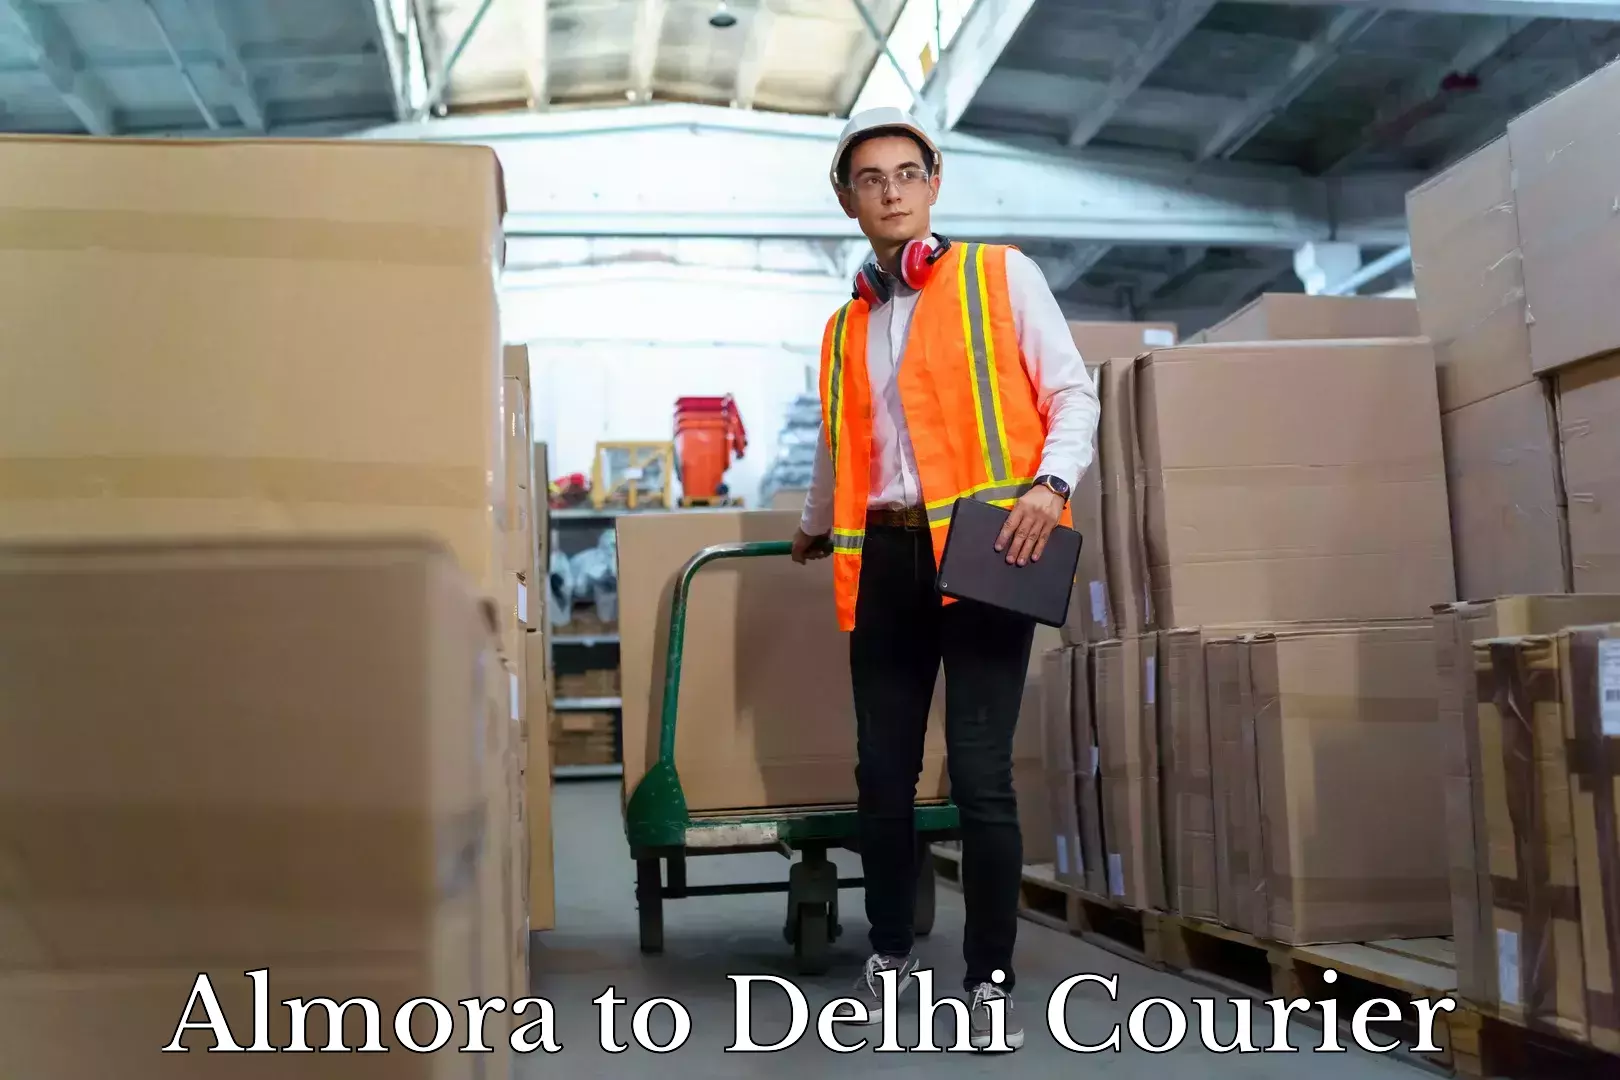 Professional moving company Almora to Delhi